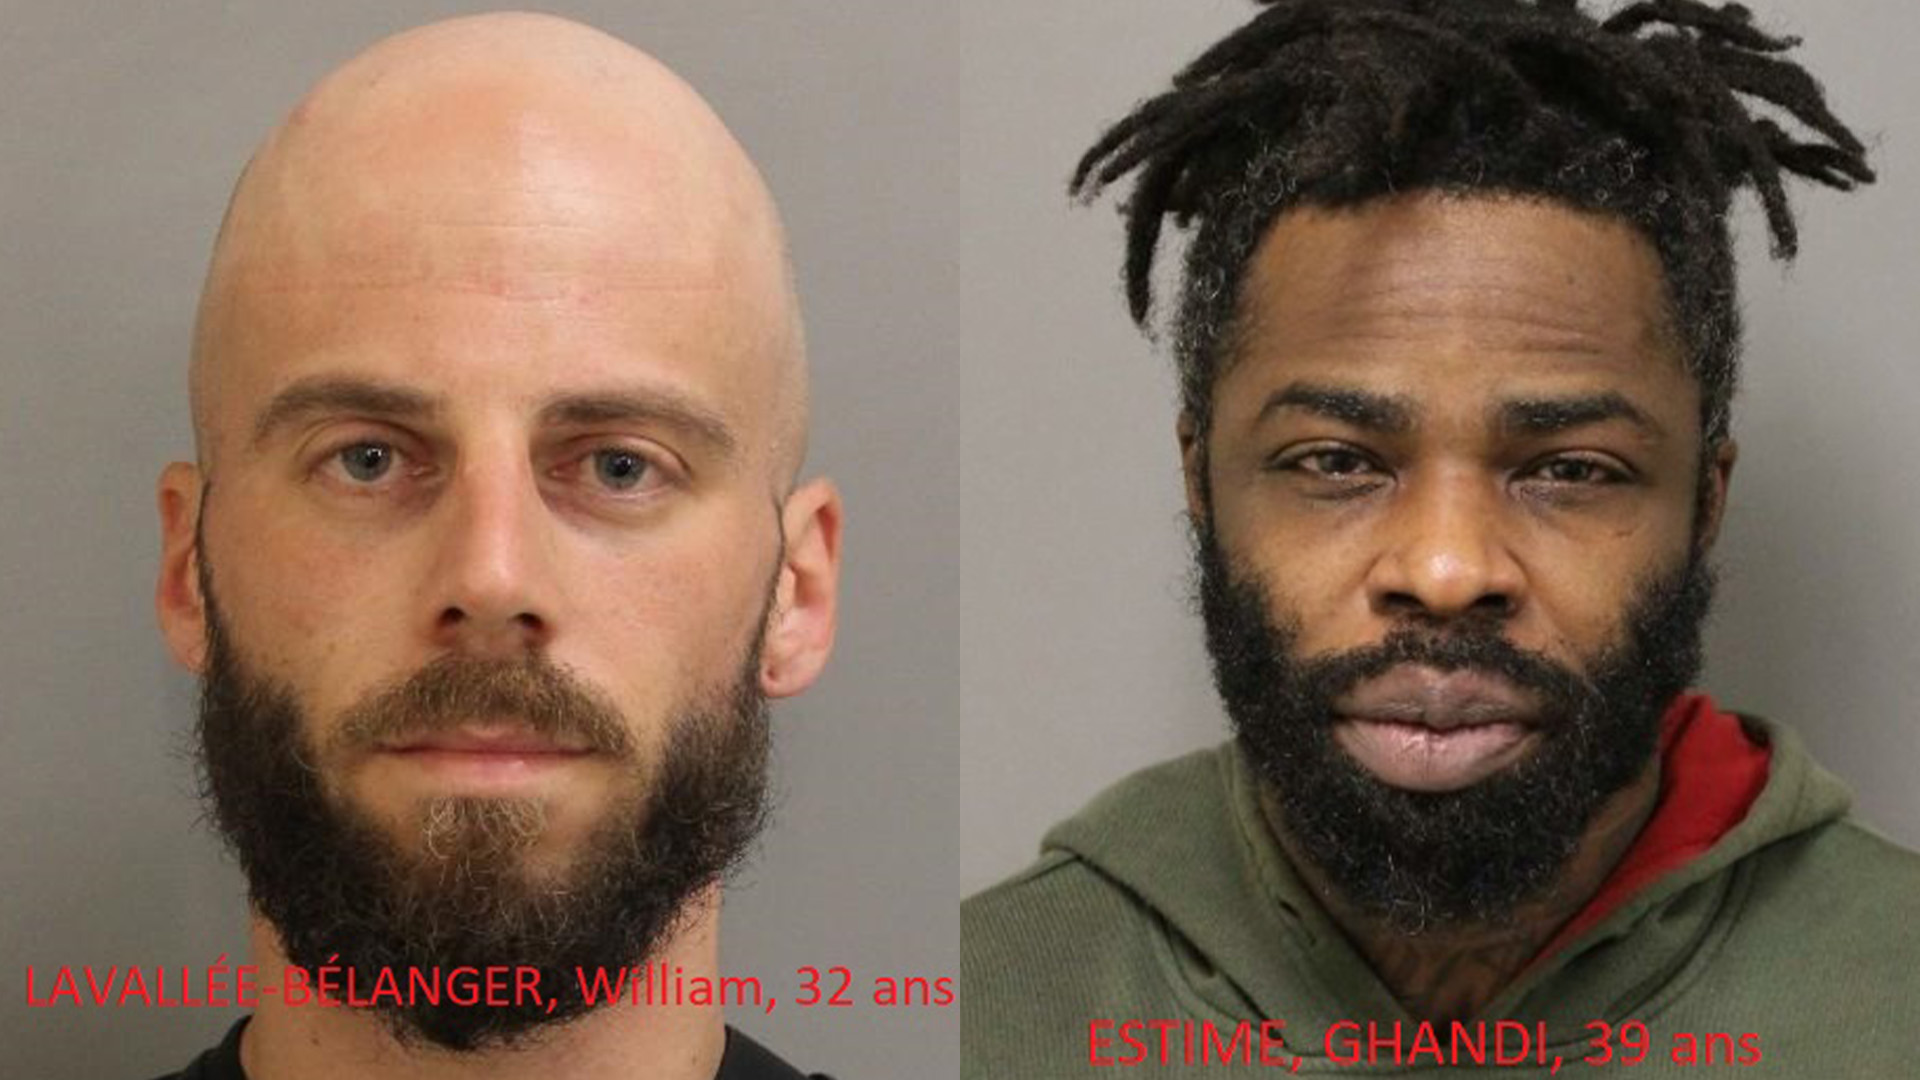 Le SPAL annonce jeudi le 21 décembre 2023 avoir procédé à l'arrestation de deux suspects de fusillades :  William Lavallée-Bélanger et  Ghandi Estimé.